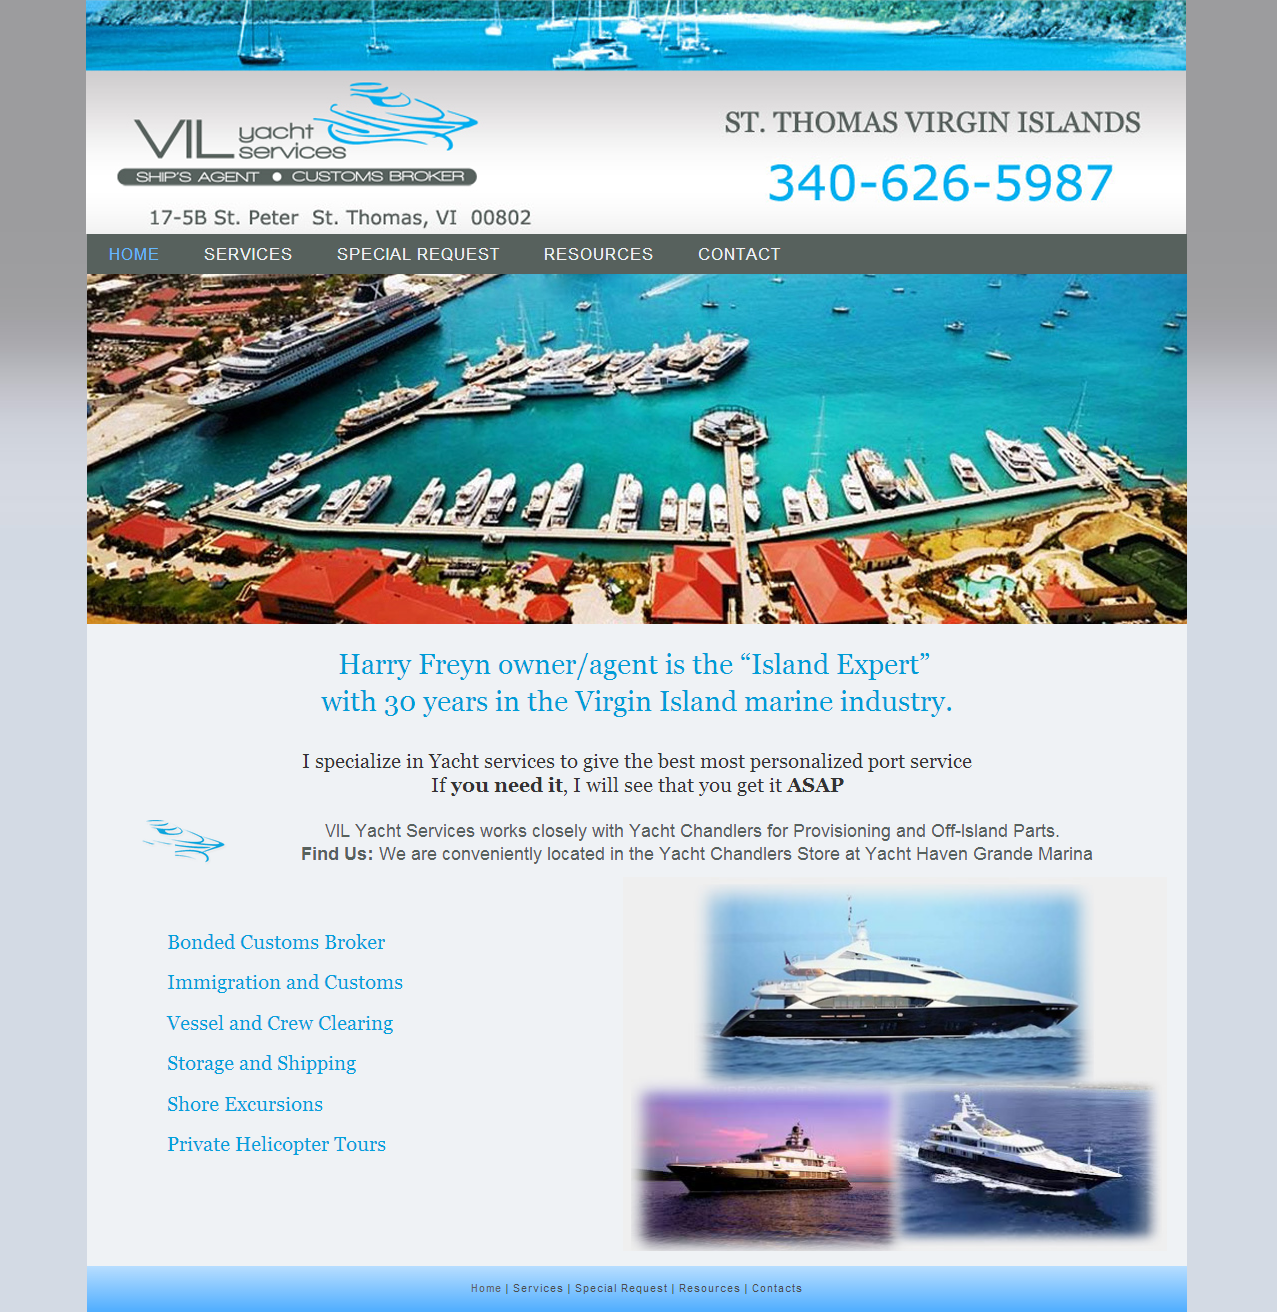 VIL Yacht Services